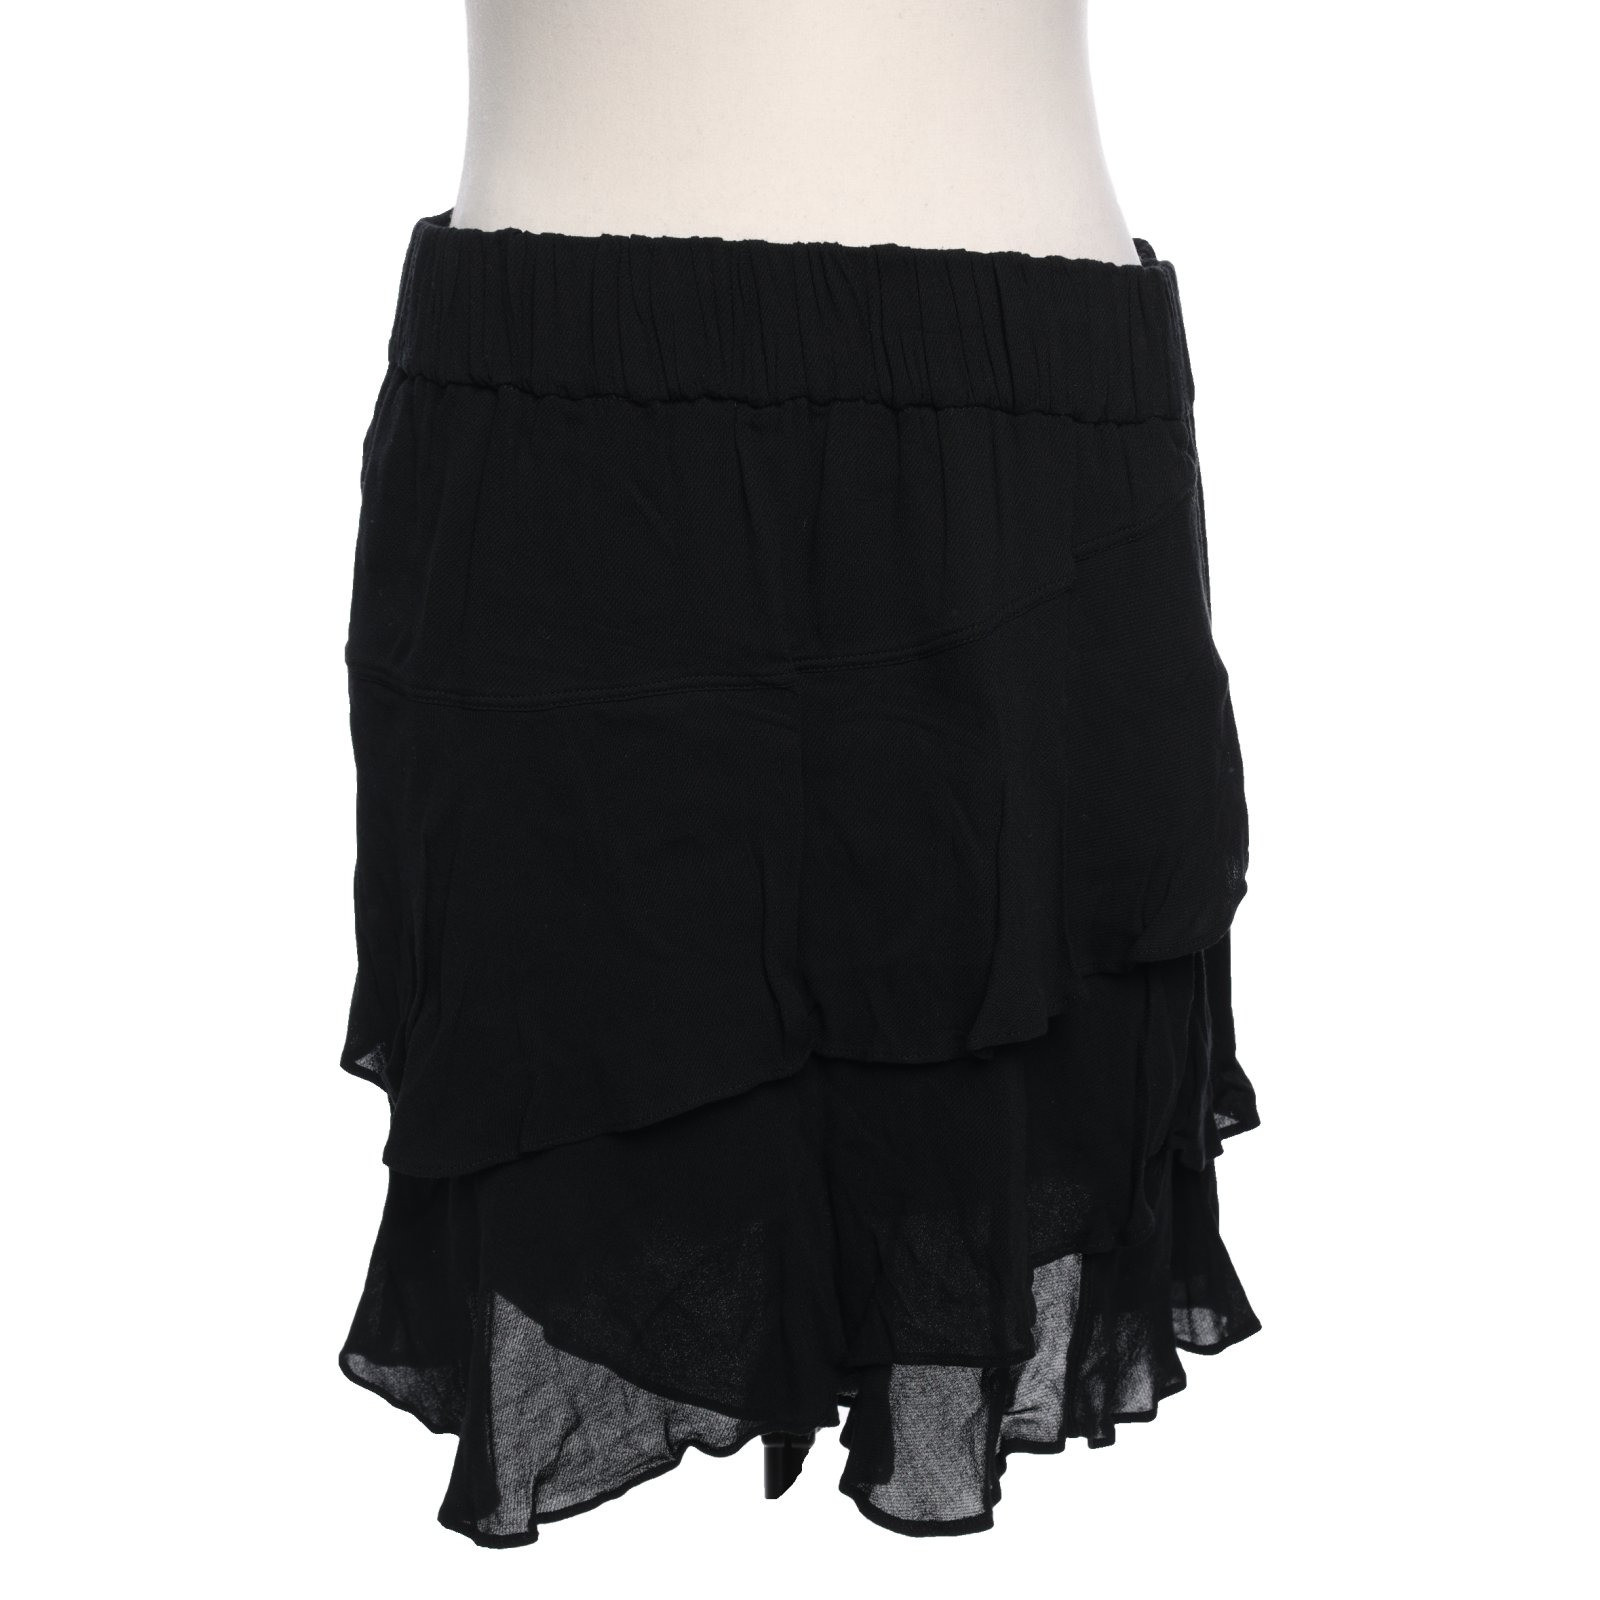 Iro Skirt in Black - Second Hand Iro Skirt in Black buy used for 80€  (7711612)